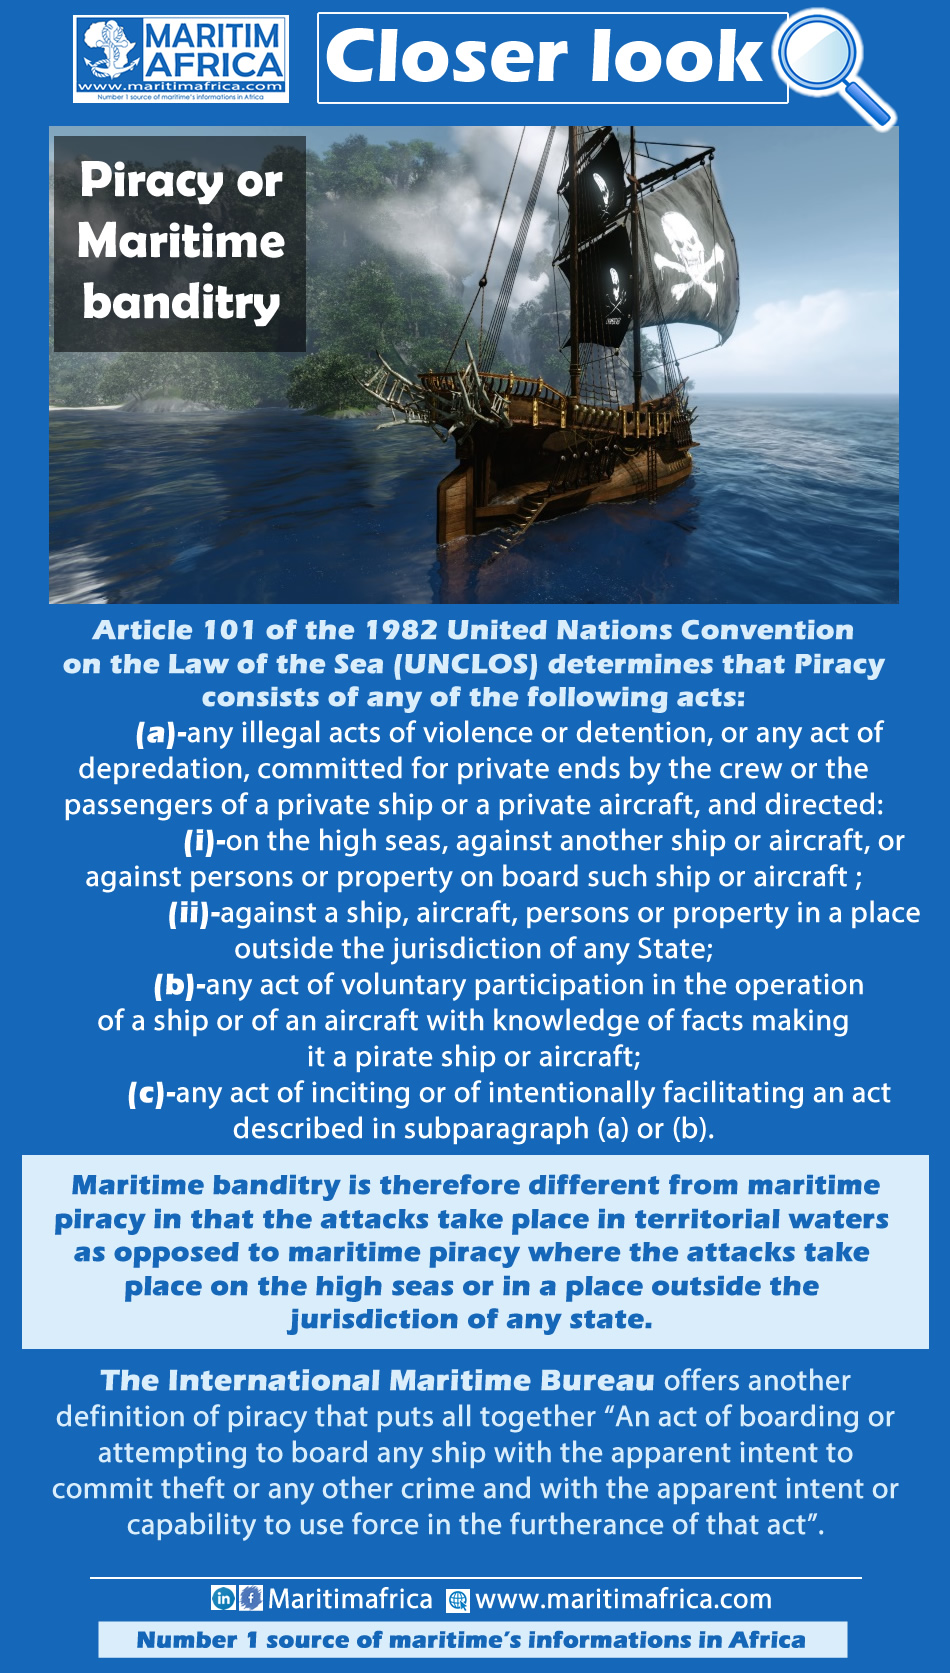 Piracy or Maritime banditry